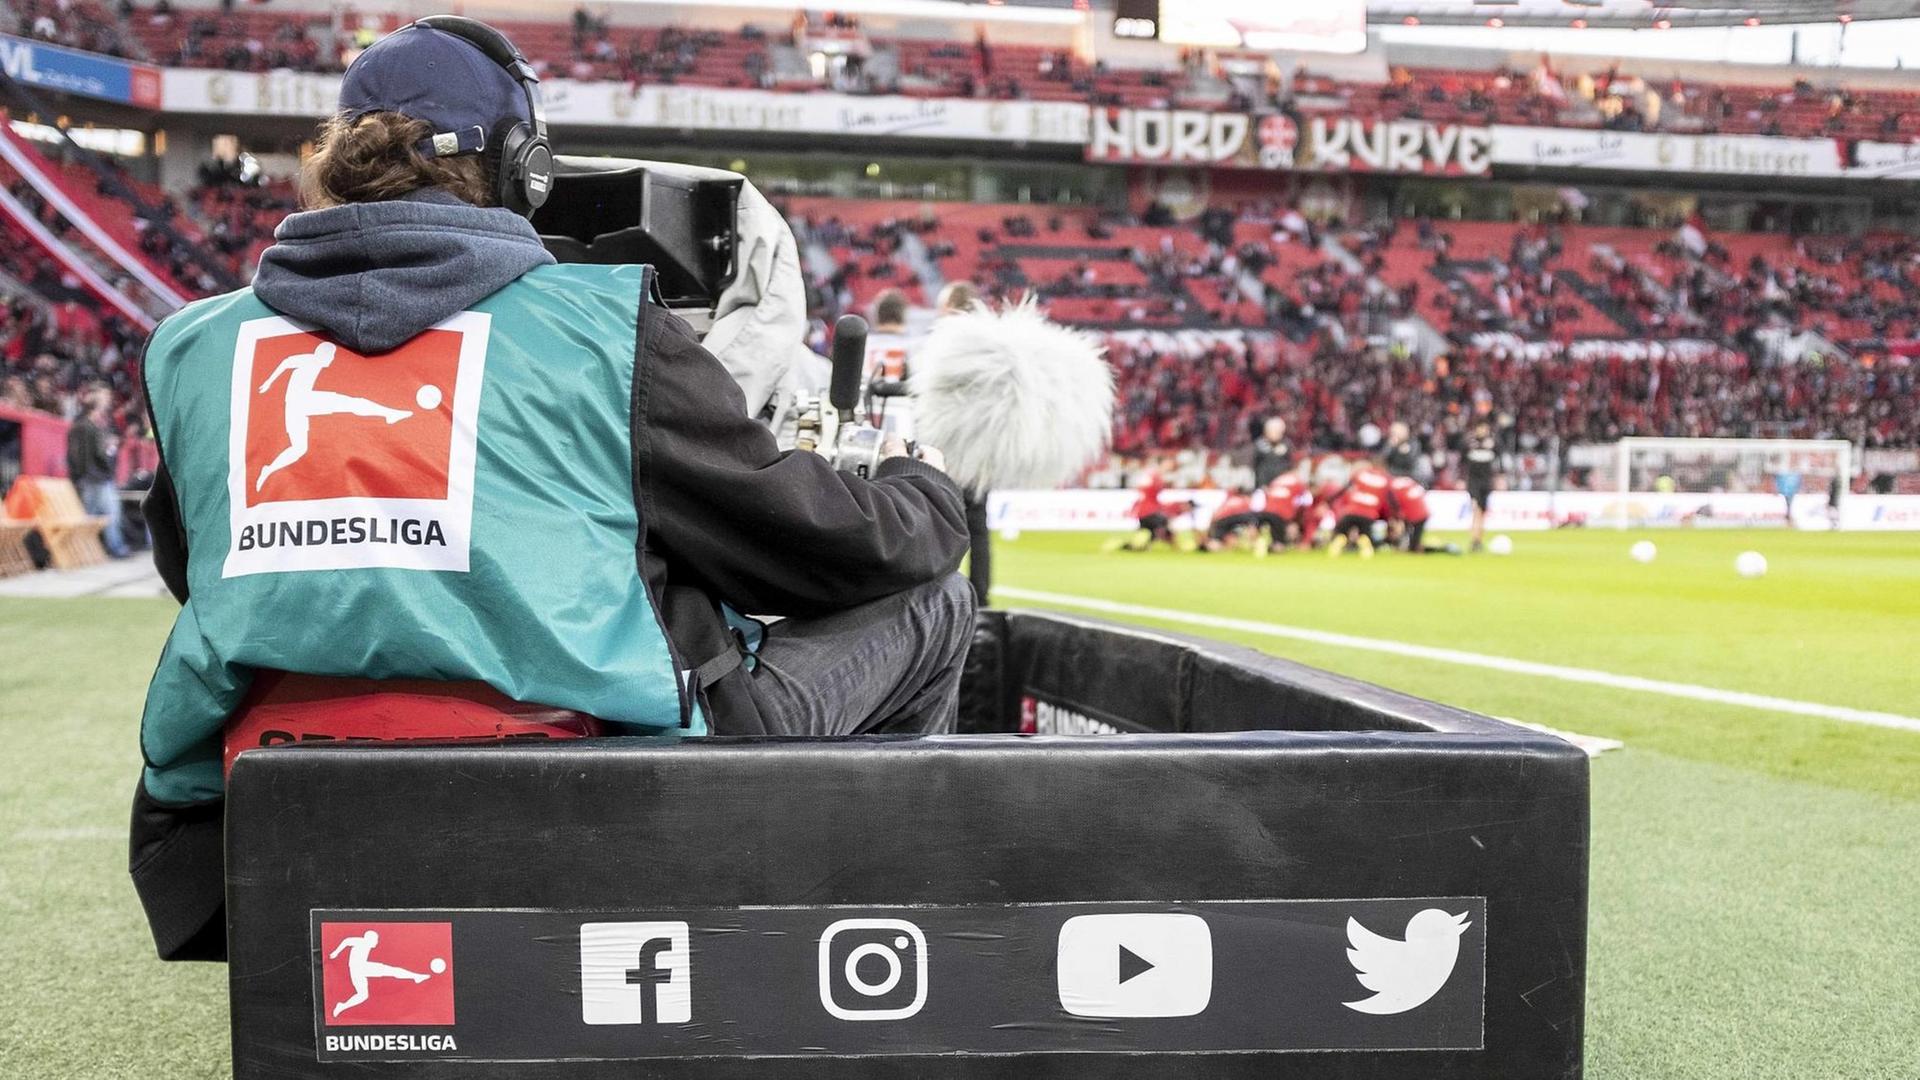 TV-Kameramann filmt am Spielfeldrand während der Live-Übertragung eines Spiels der Fußball-Bundesliga